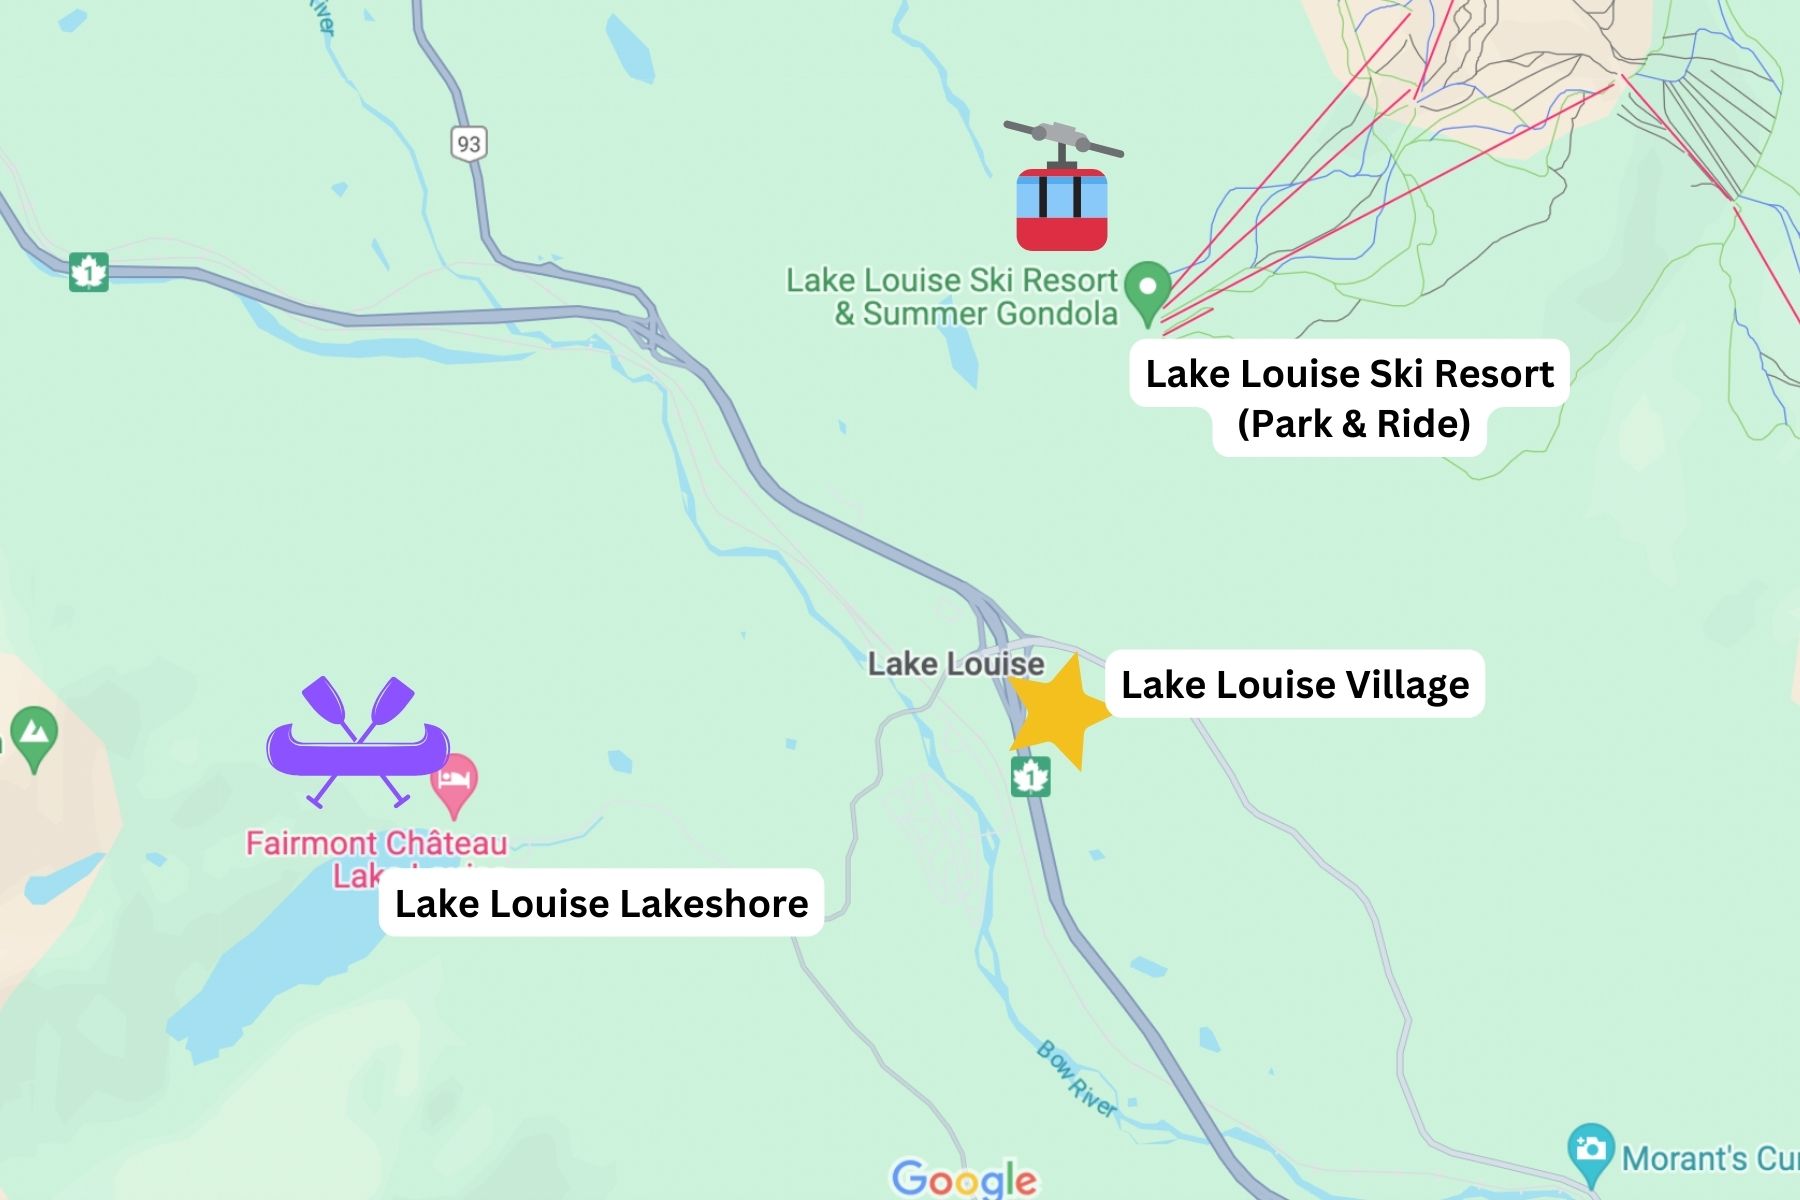 The whole Lake Louise Area